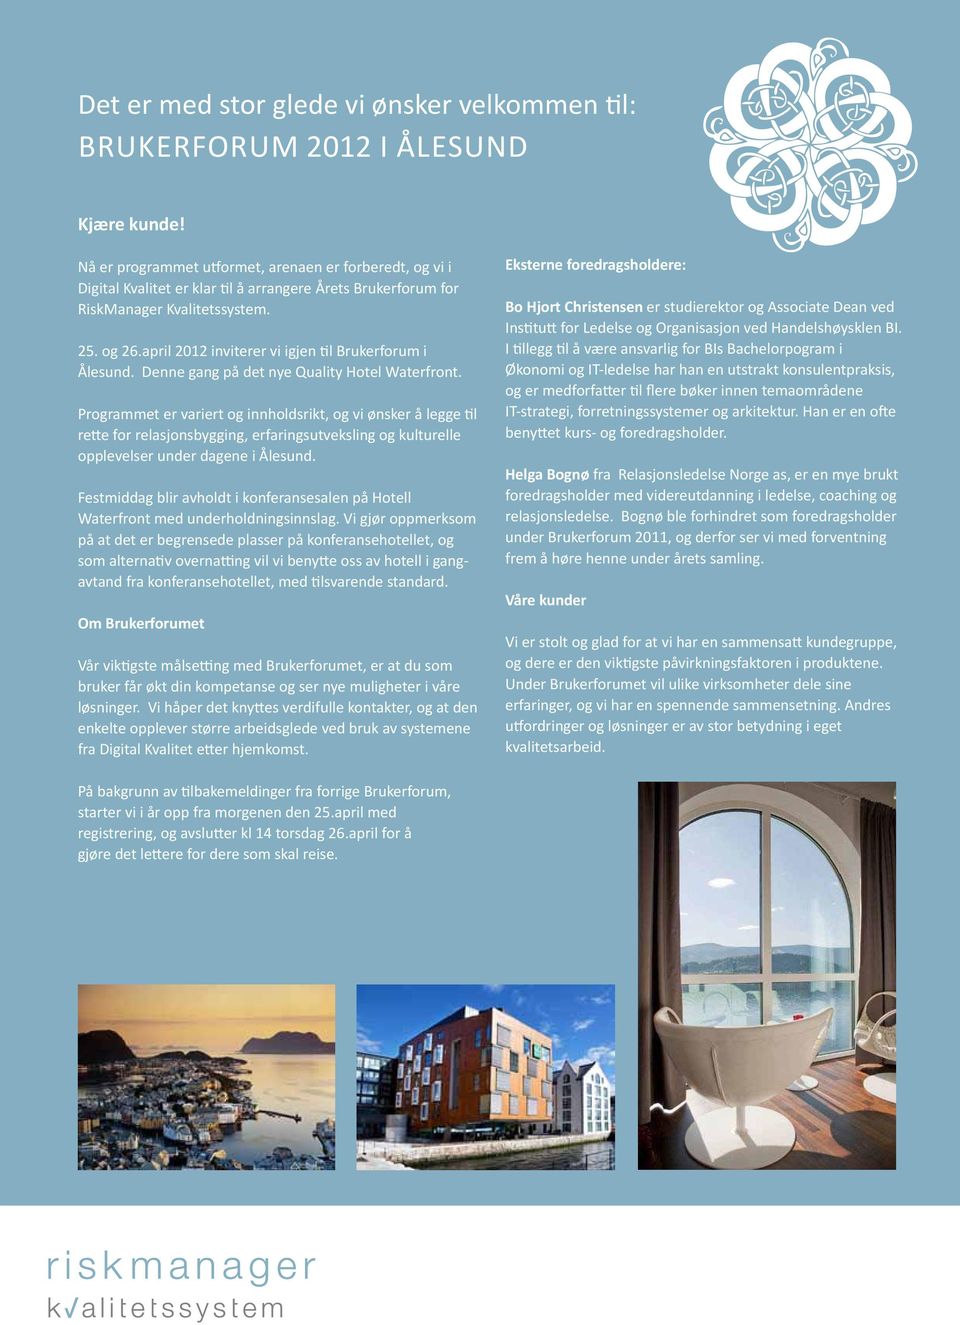 april 2012 inviterer vi igjen til Brukerforum i Ålesund. Denne gang på det nye Quality Hotel Waterfront.